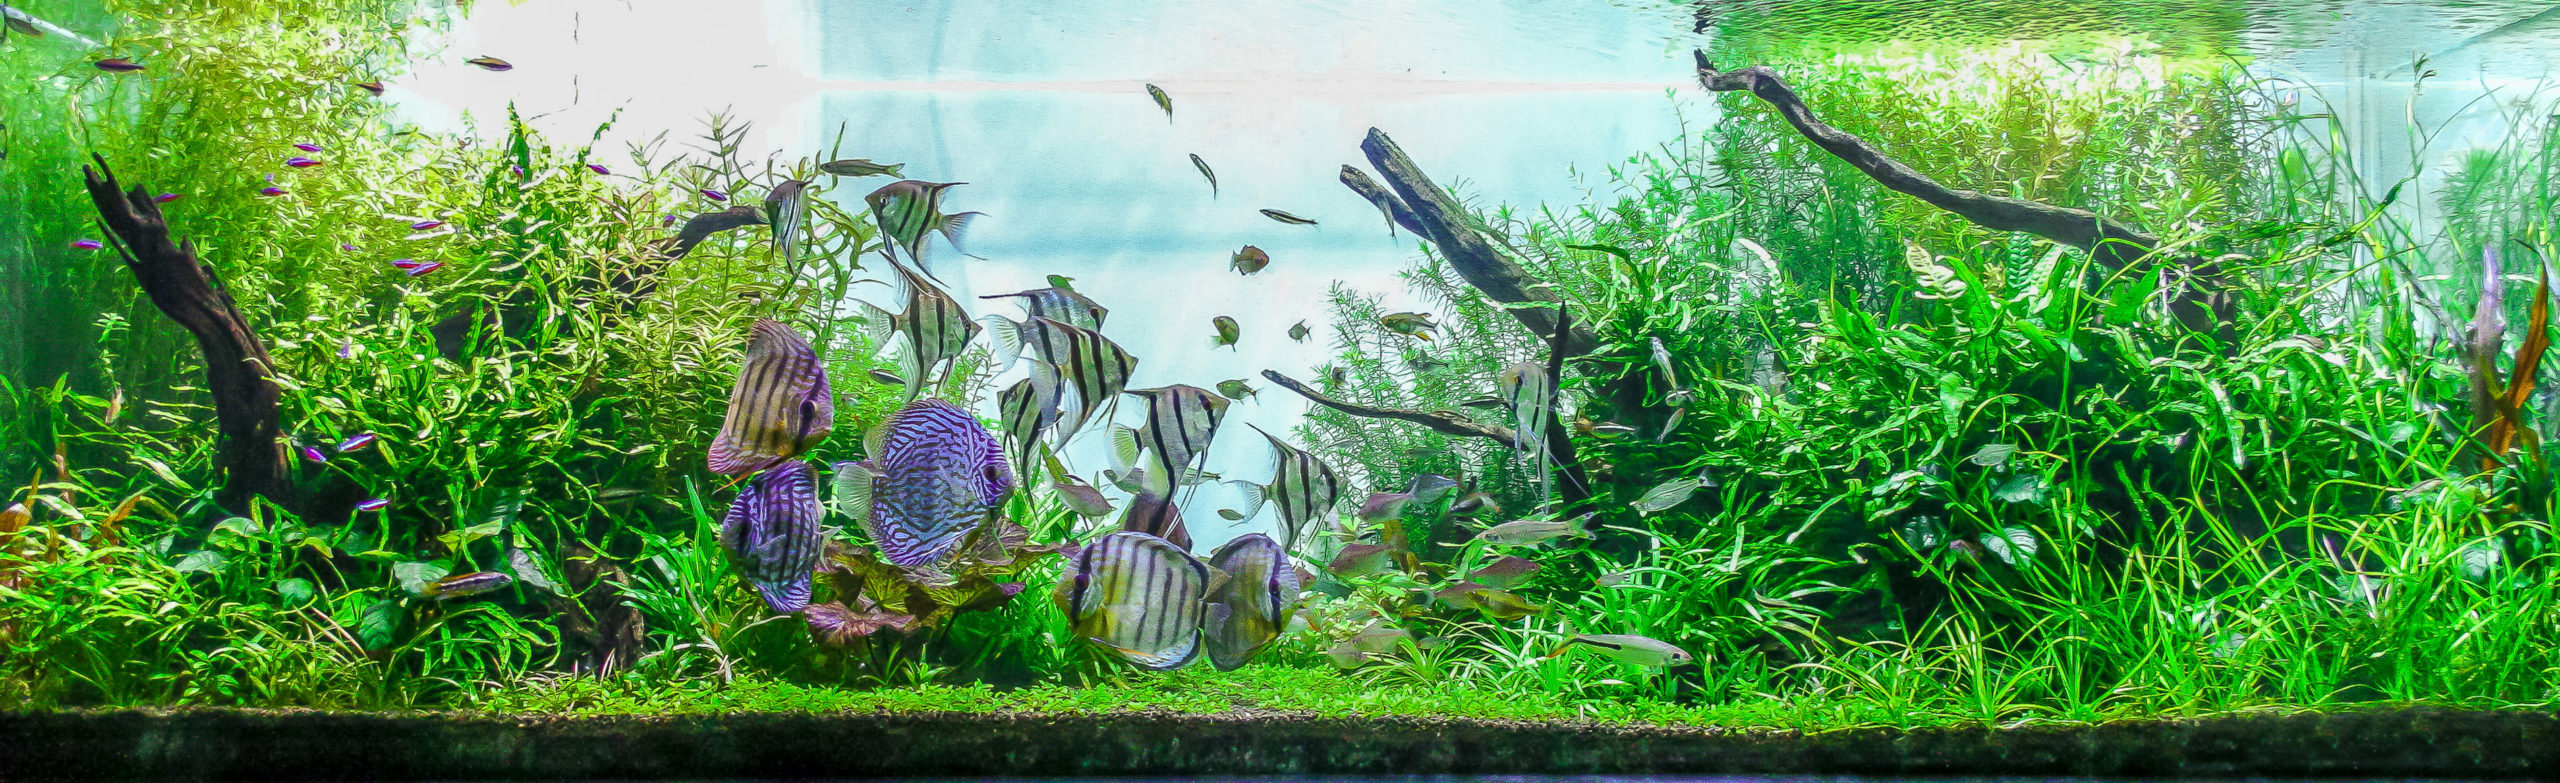 custom aquarium tank installations